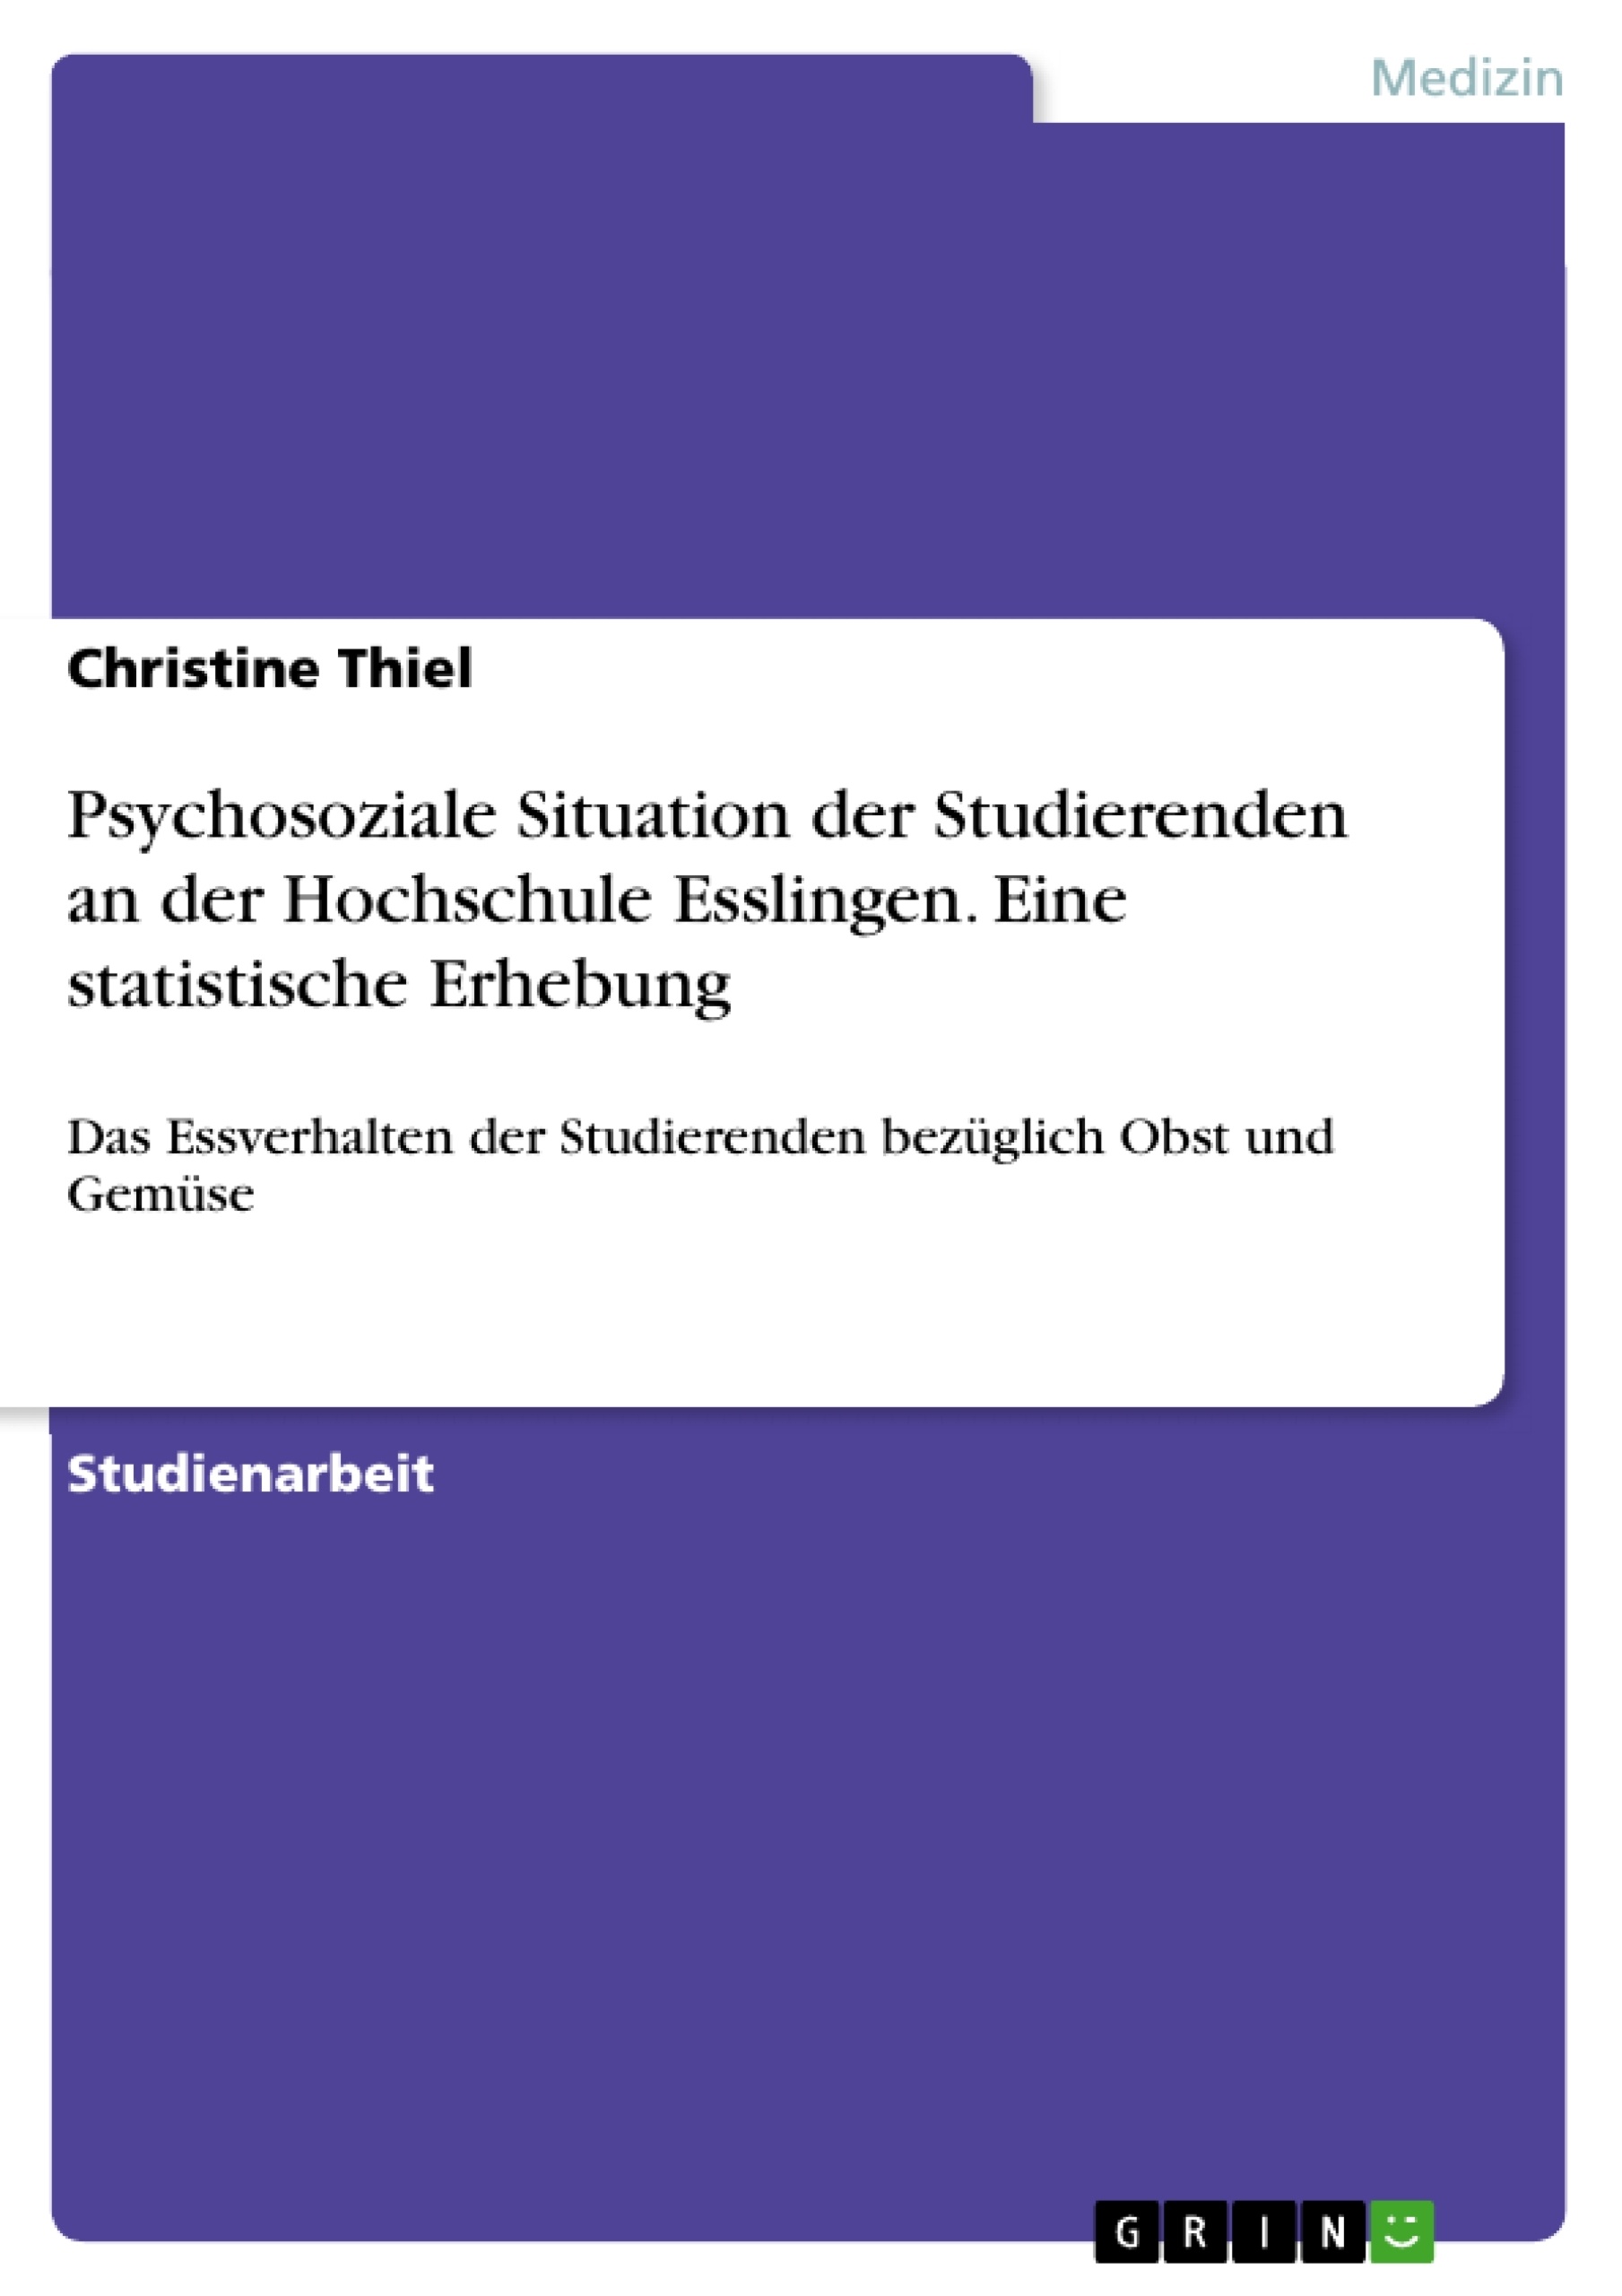 Title: Psychosoziale Situation der Studierenden an der Hochschule Esslingen. Eine statistische Erhebung